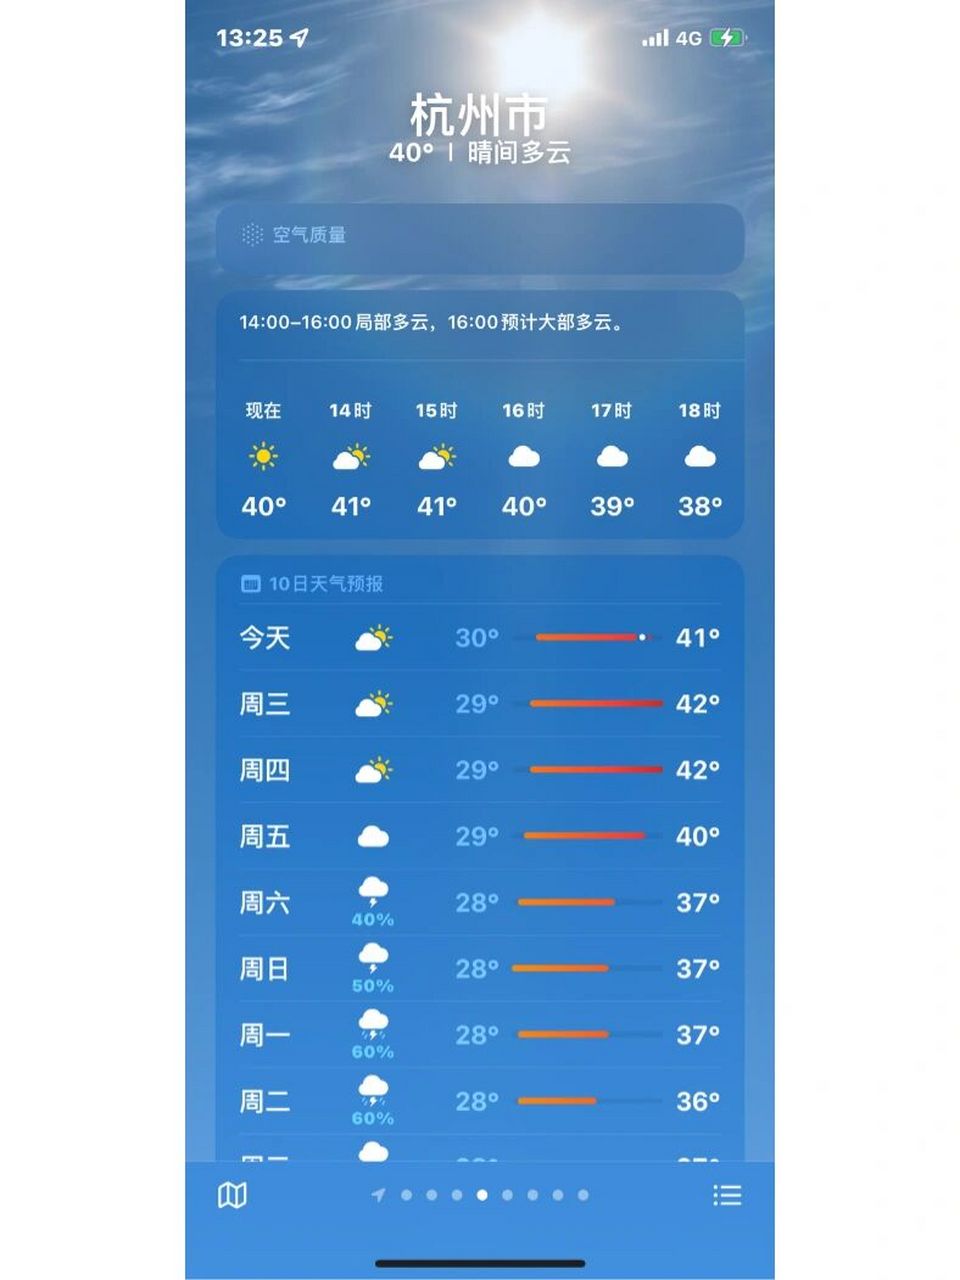 杭州市天气预报图片